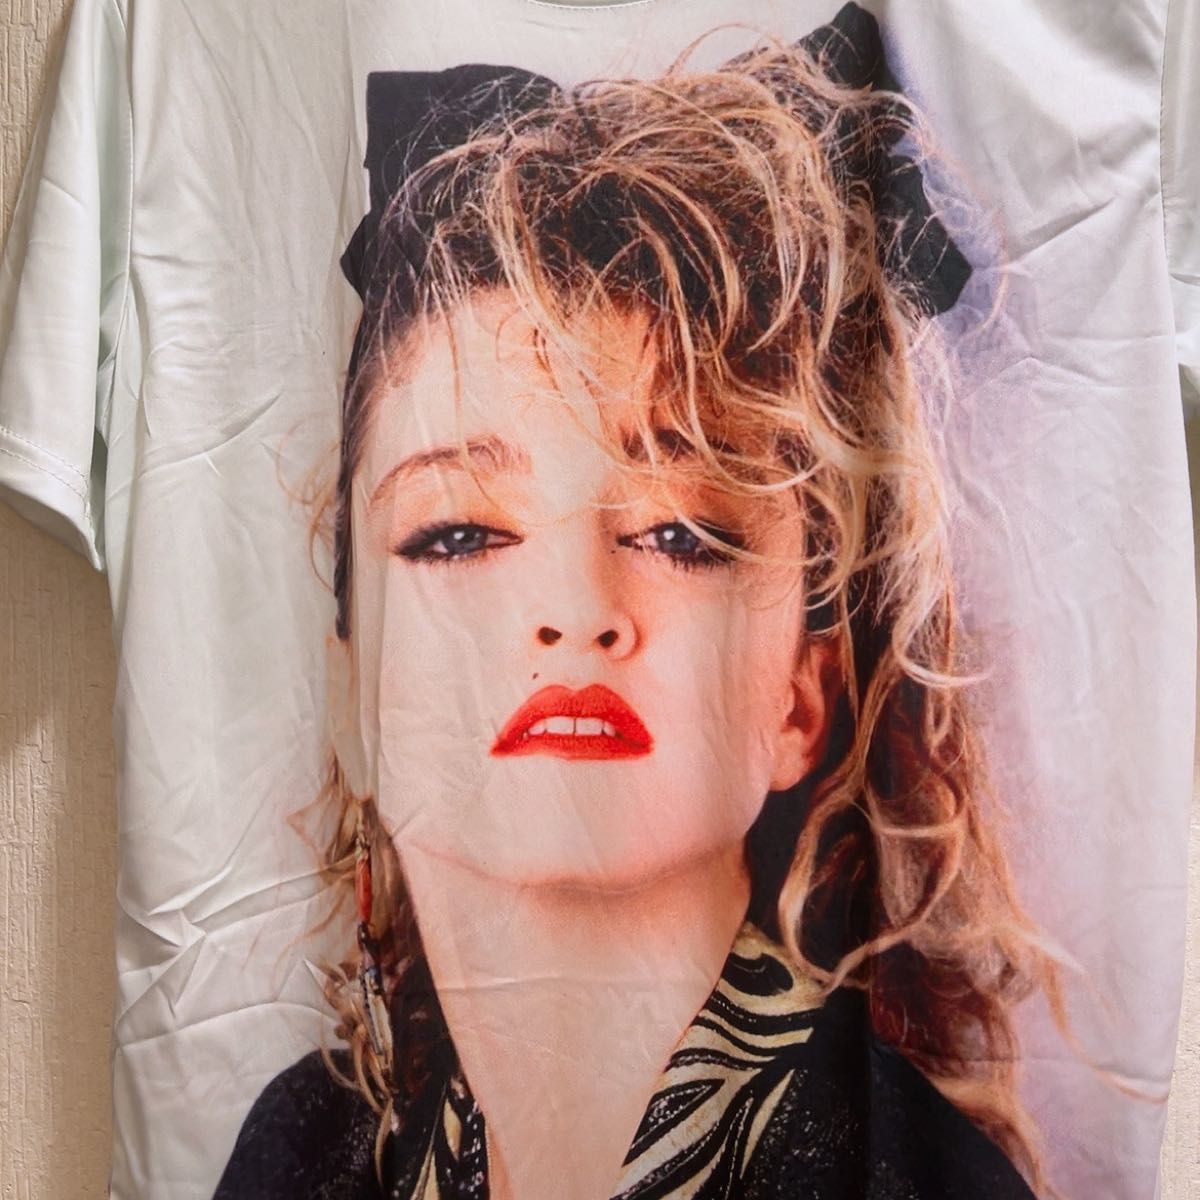 新品★80年代Madonna★マドンナ★Tシャツ★ユニセックス★L プリントTシャツ